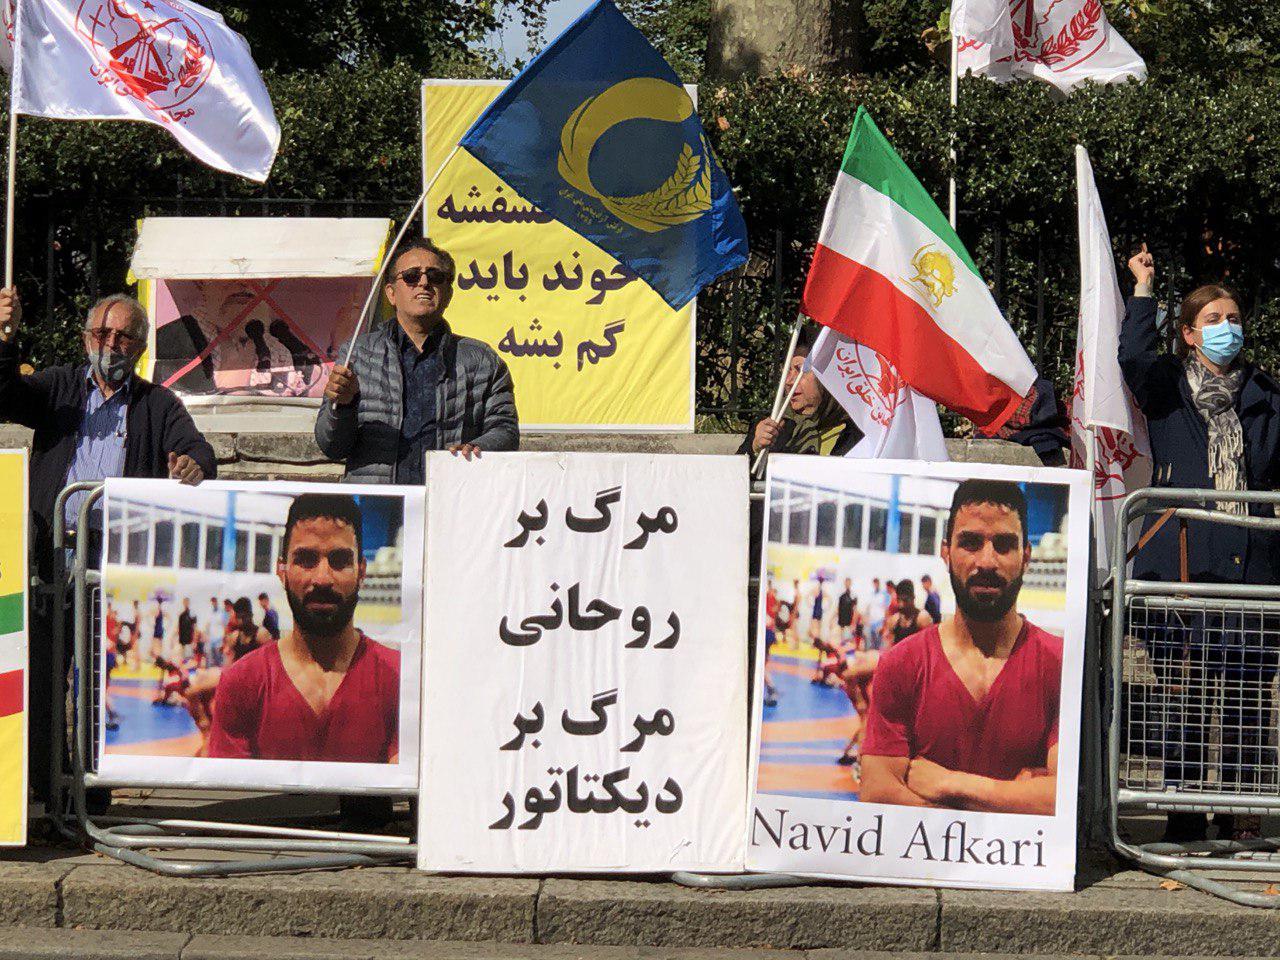 مظاهرات للمعارضة الإيرانية ضد إعدام نويد أفكاري